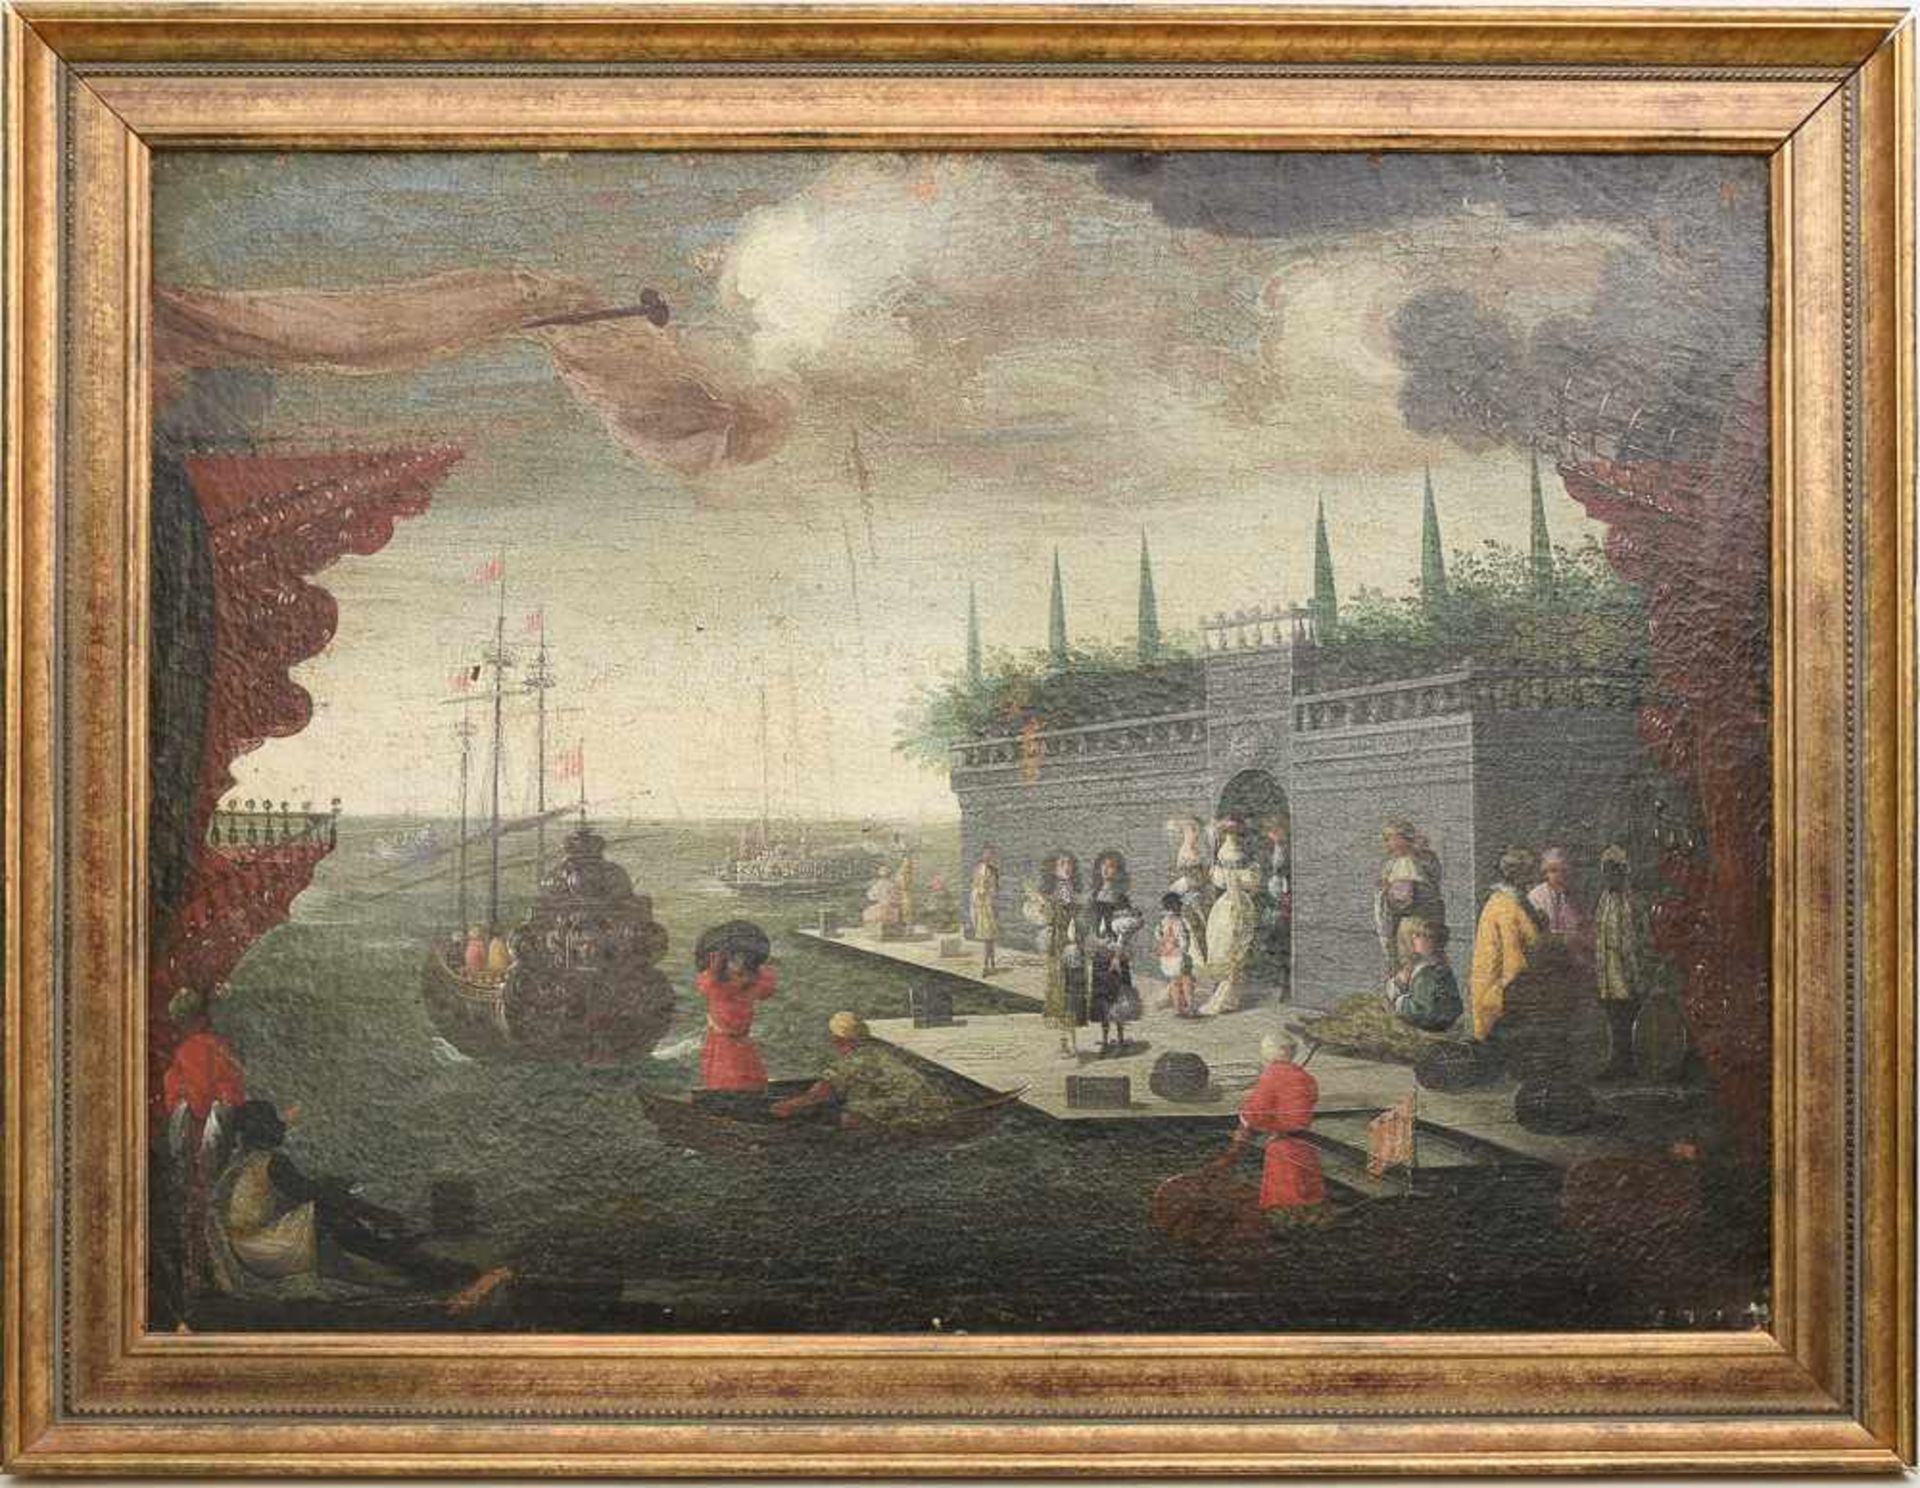 UNBEKANNTER KÜNSTLER, " Hafenszene", Öl auf Leinwand, 1 hälfte 17. Jahrhundert. Gerahmt, Guter